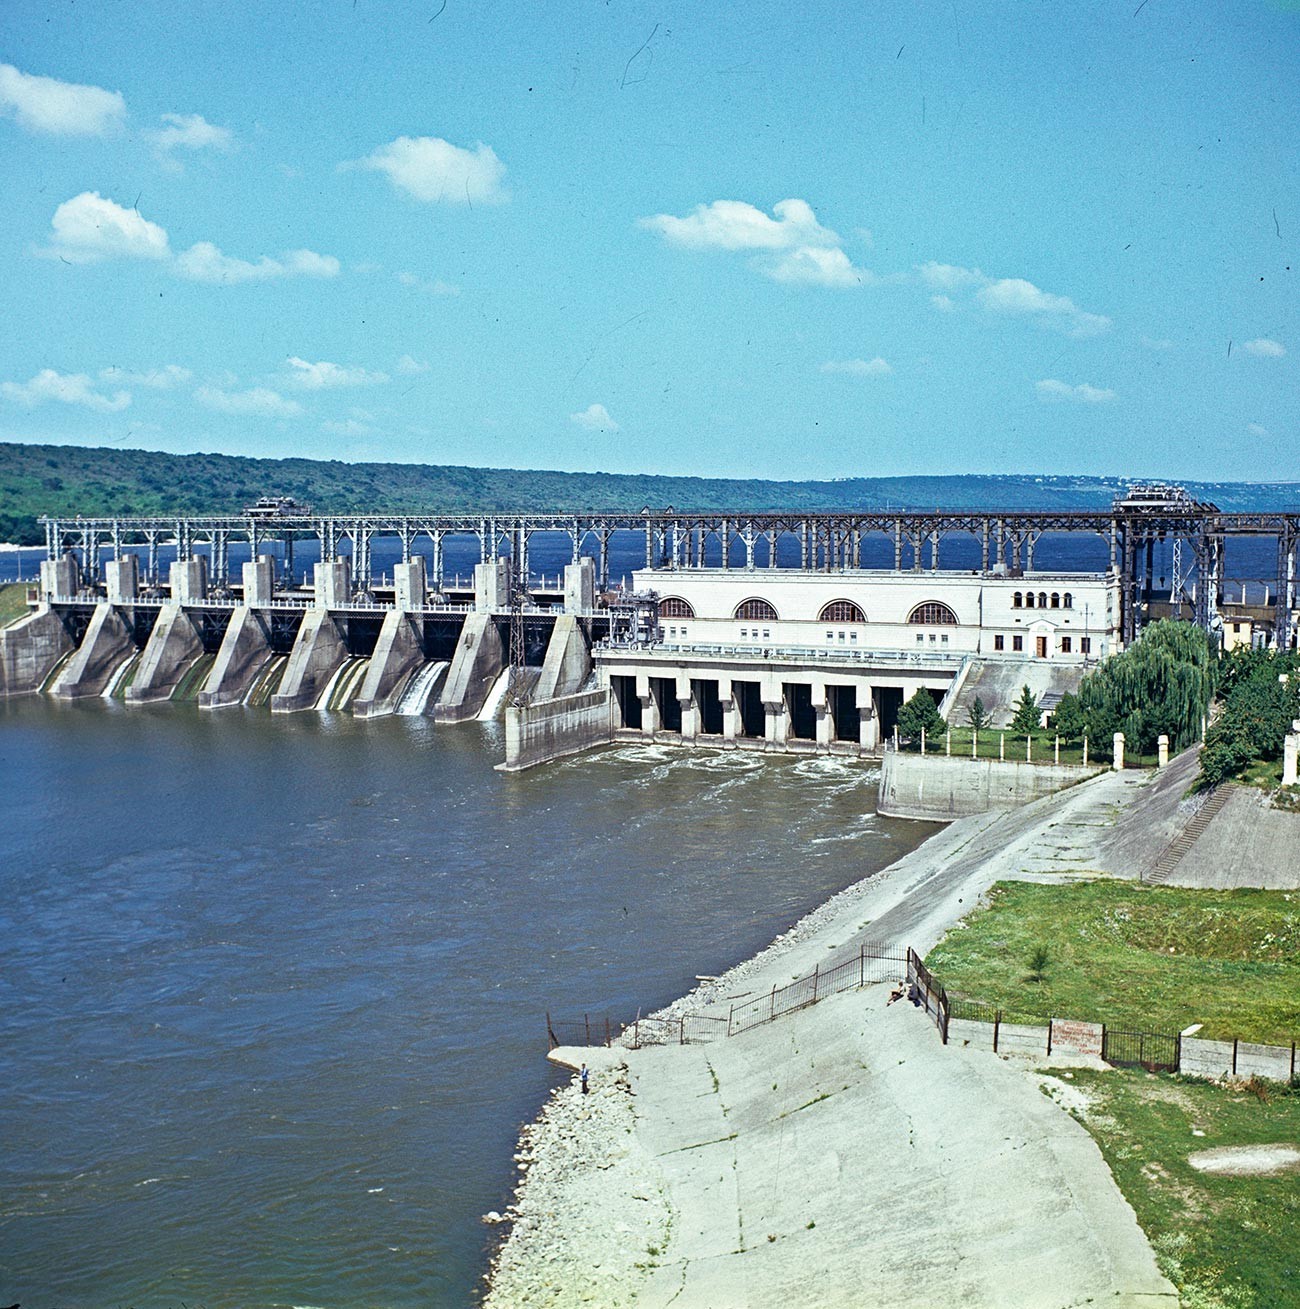 Дубосарска хидроелектрана, 1980 година.
